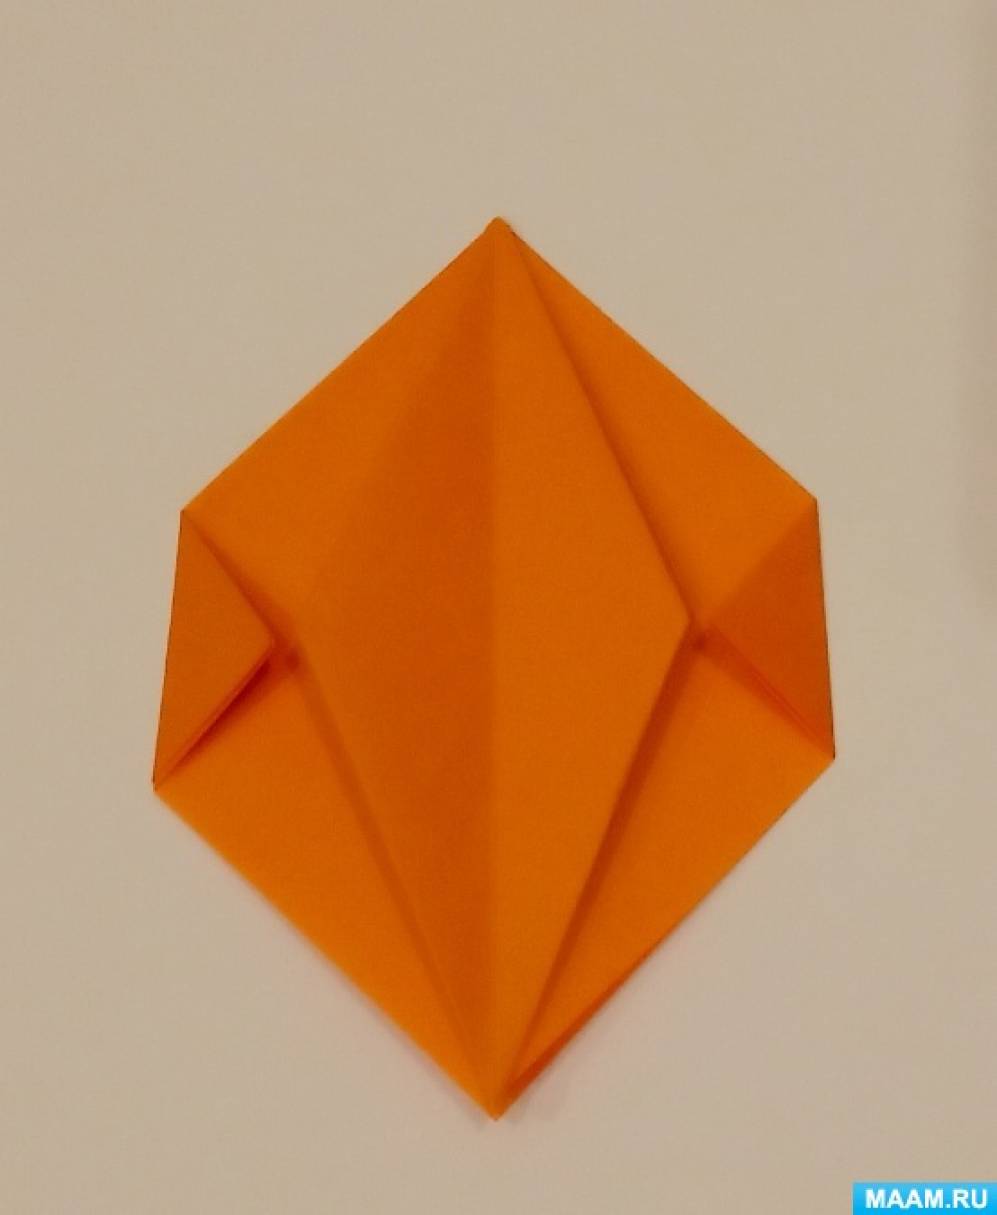 Конспект занятия по оригами в подготовительной группе «Овощи»